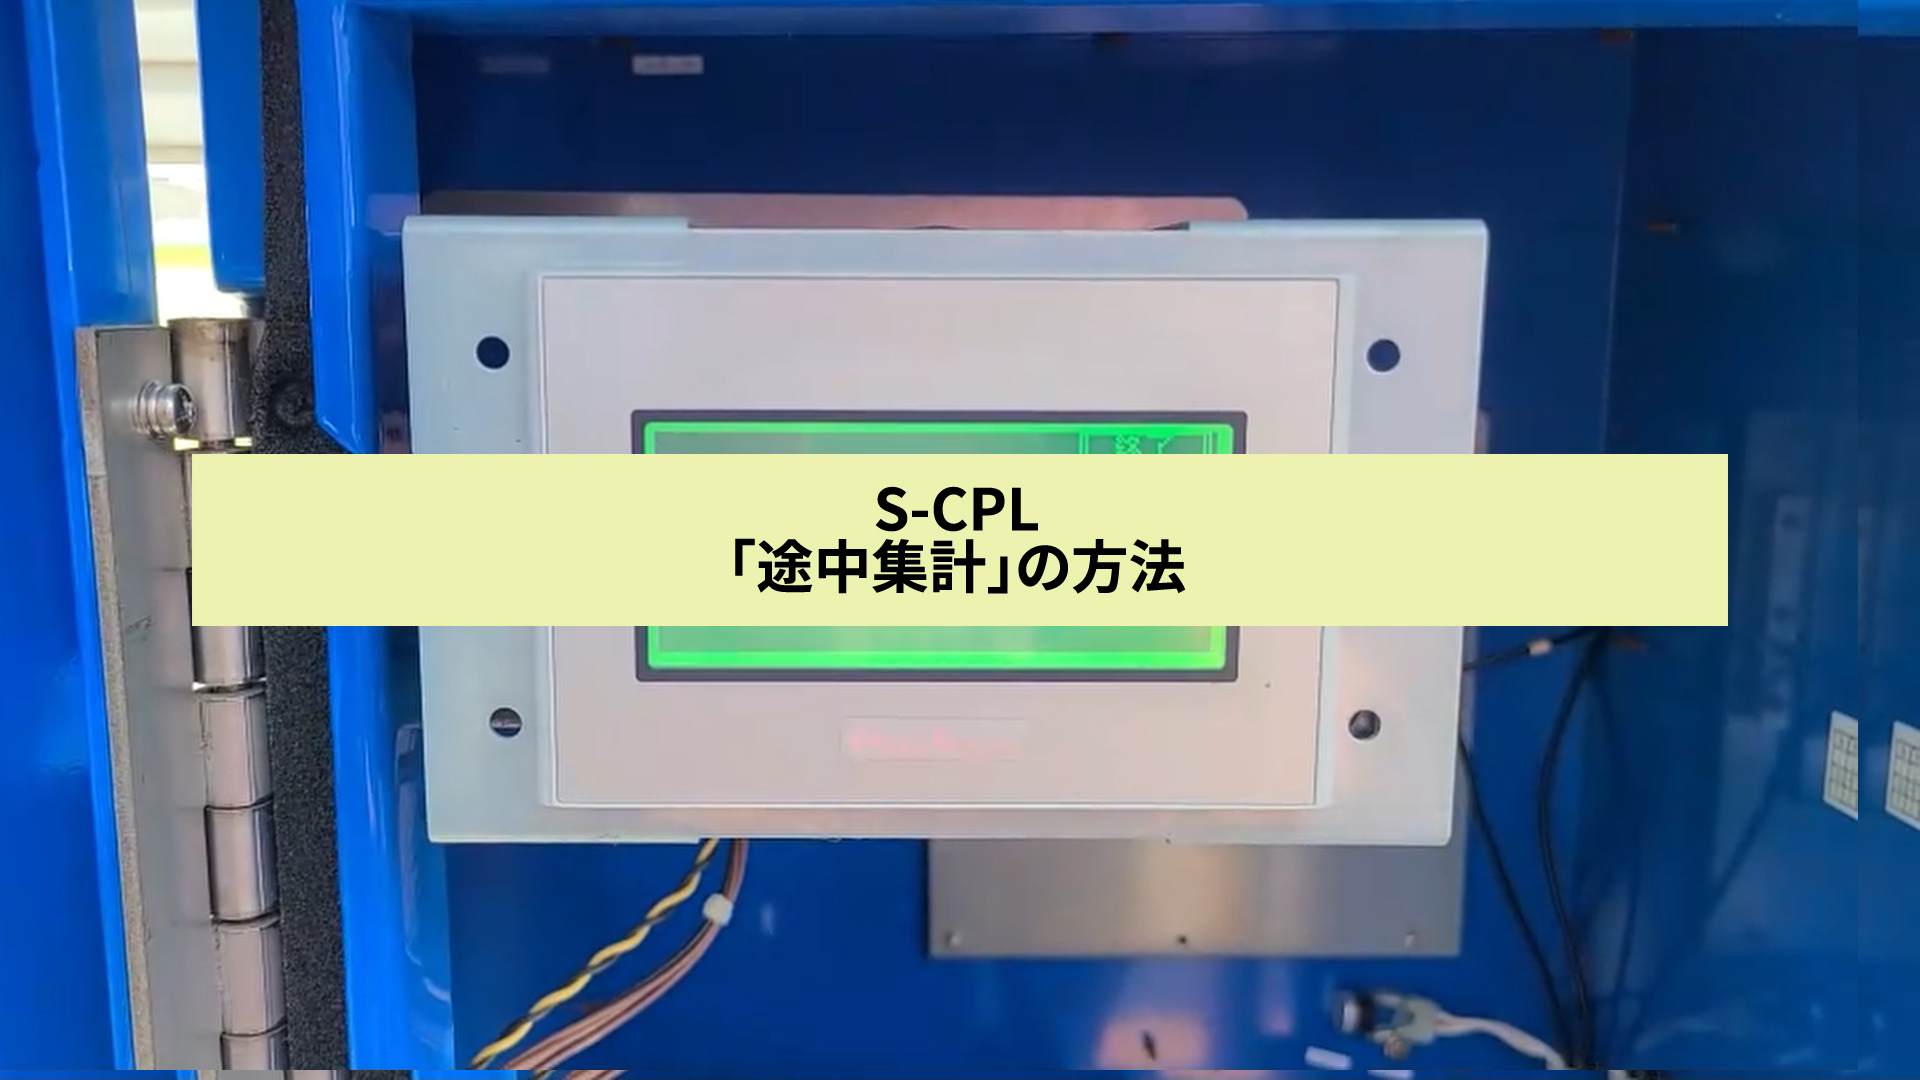 【ダウンロード販売】S-CPL「途中集計」の方法